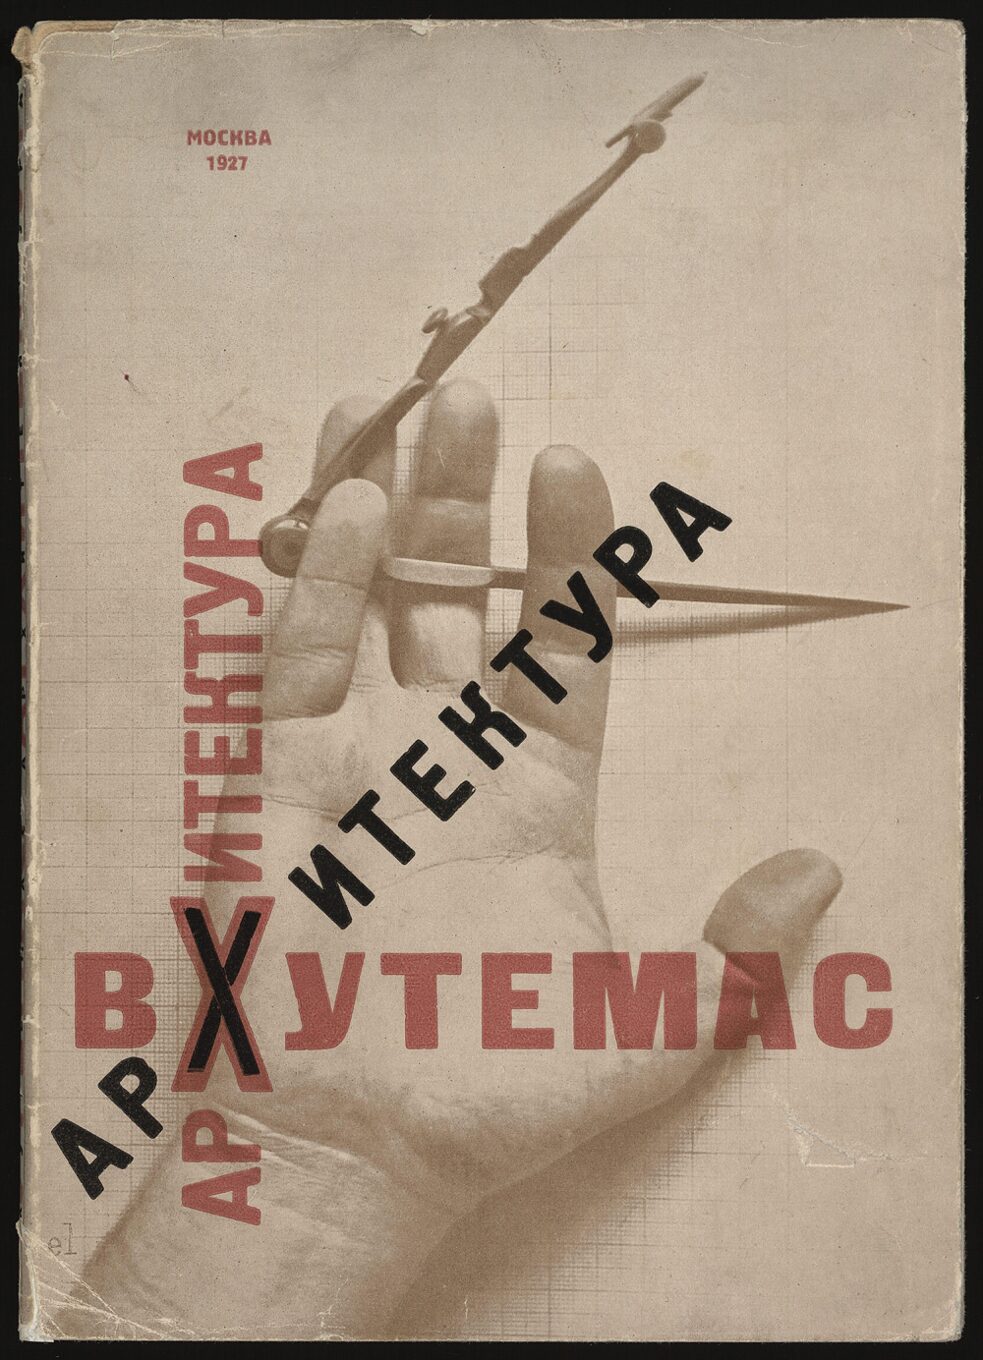 <i>Die Hand des Konstrukteurs</i>. Gestaltung des Einbands der Publikation von Arbeiten der Architekturfakultät der WChUTEMAS (Höhere Künstlerisch-Technische Werkstätten). 1927.